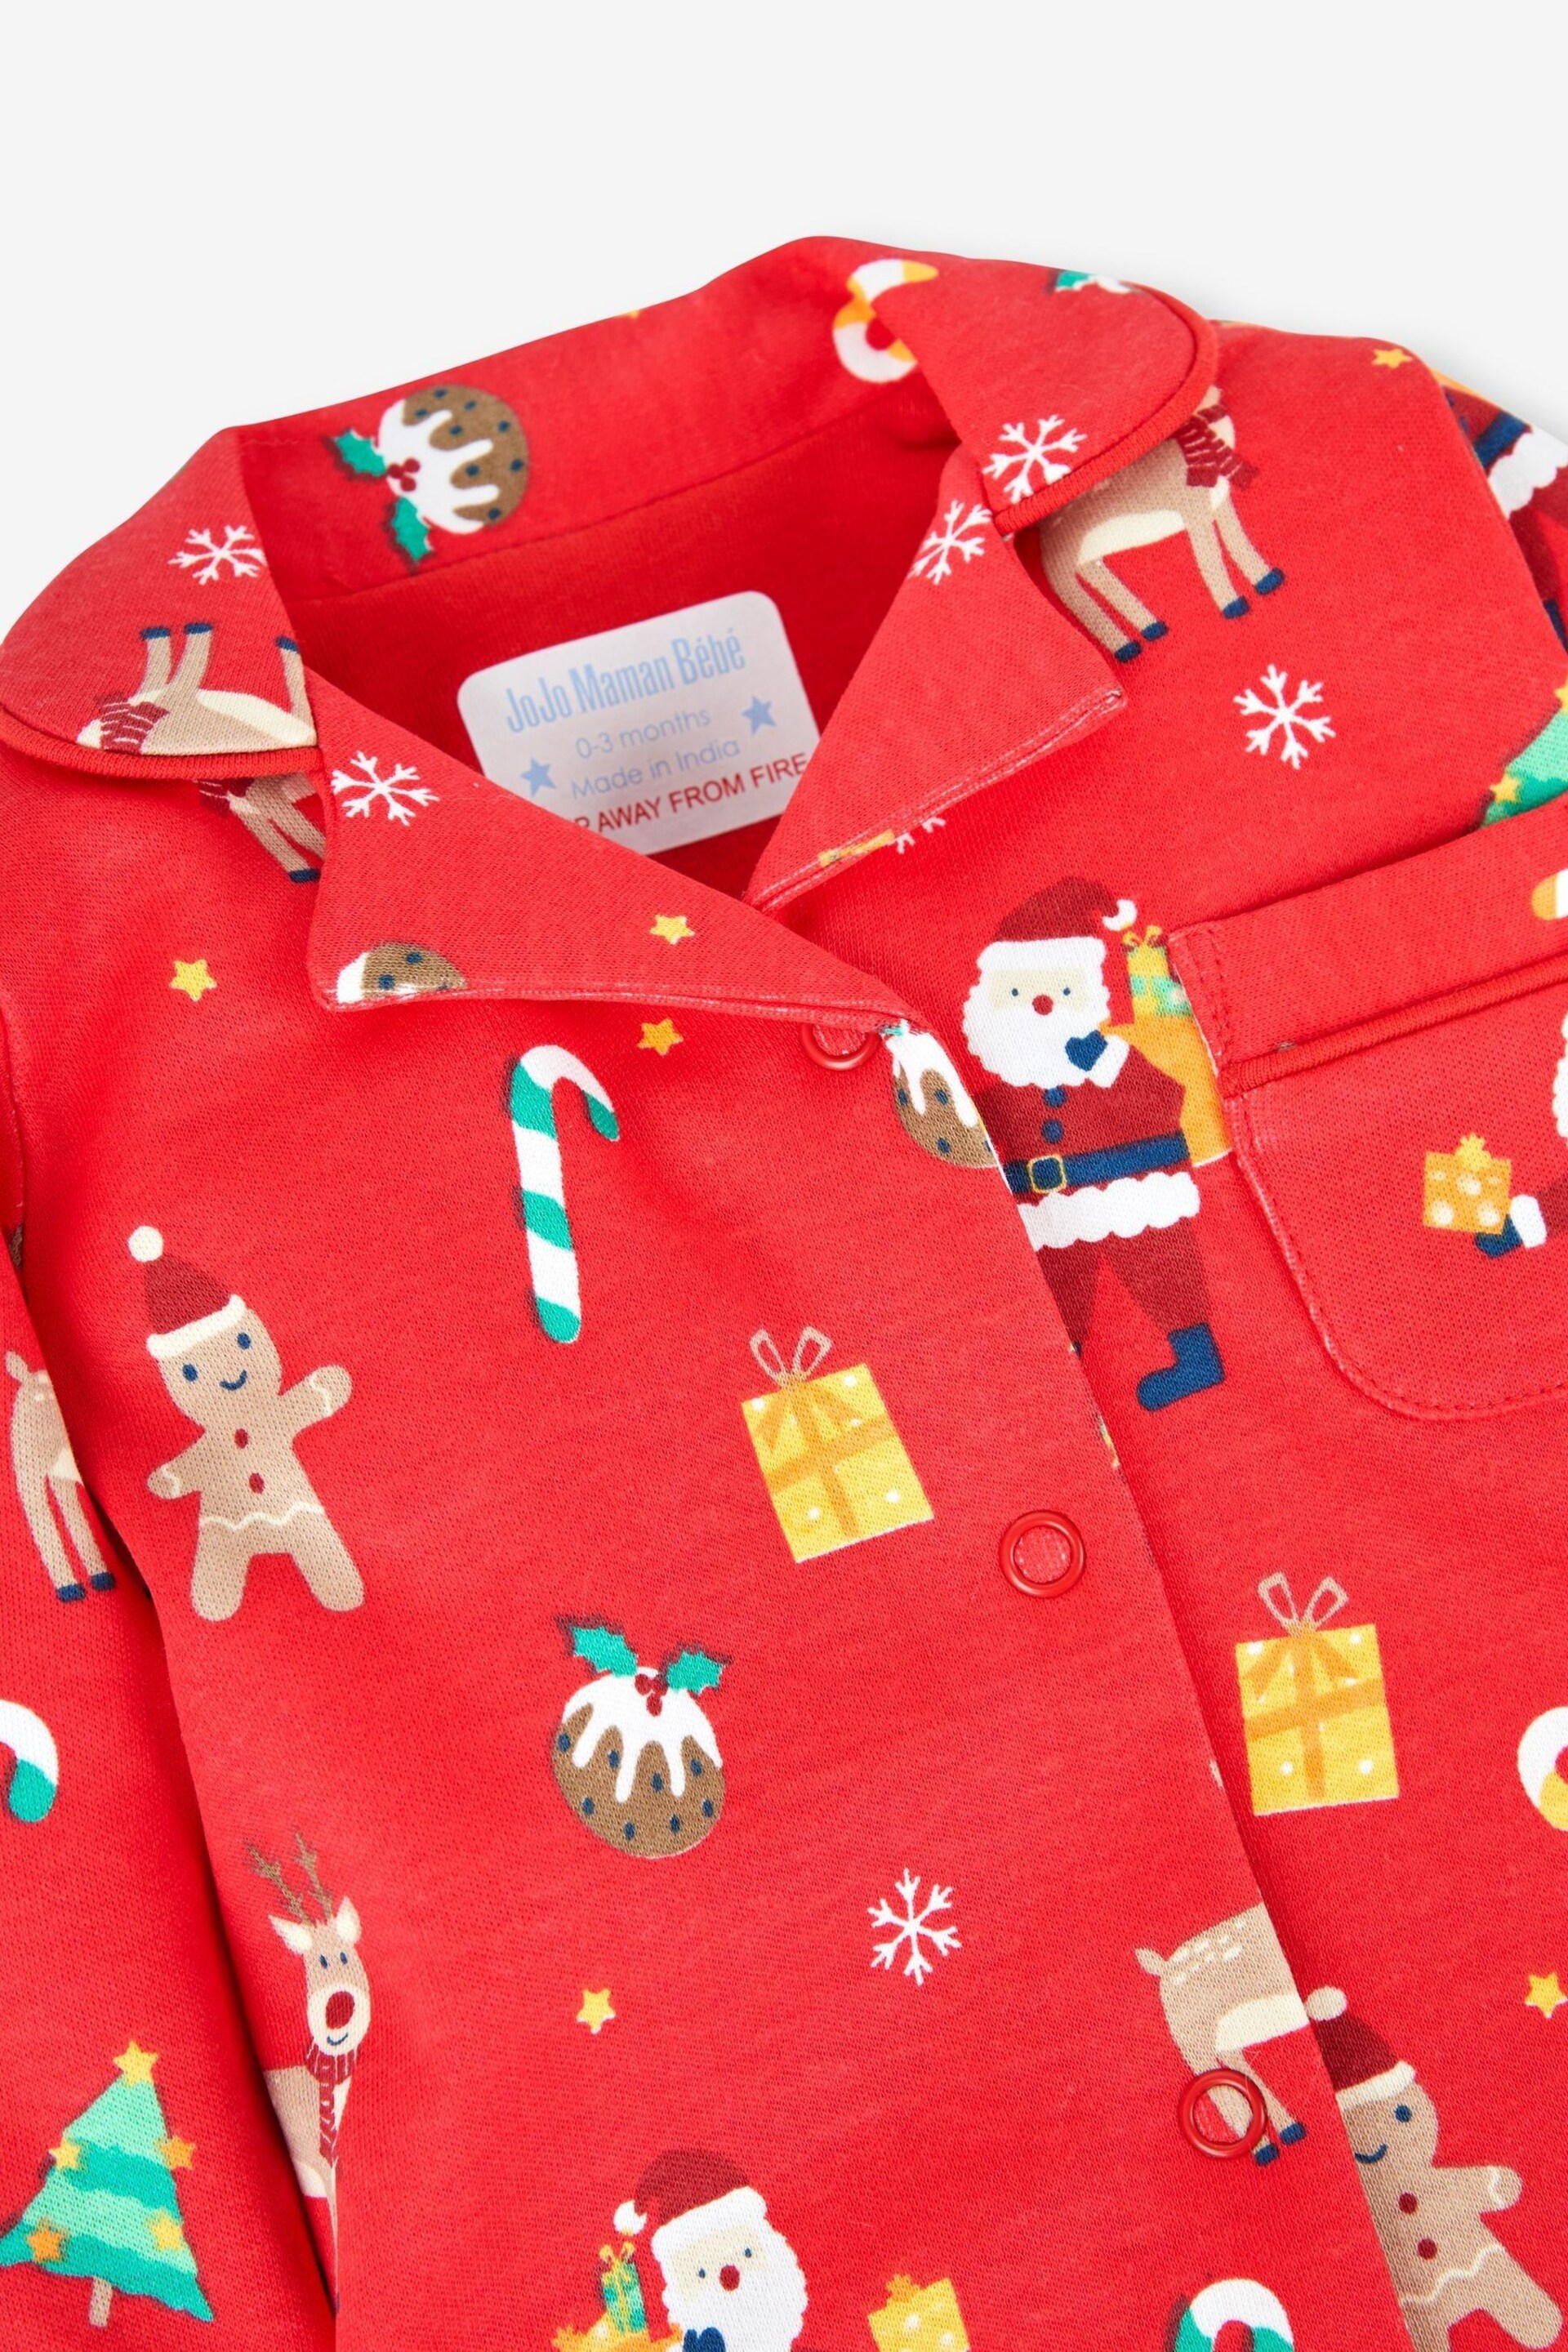 JoJo Maman Bébé Red Kids' Christmas All-In-One Pyjamas - Image 2 of 3